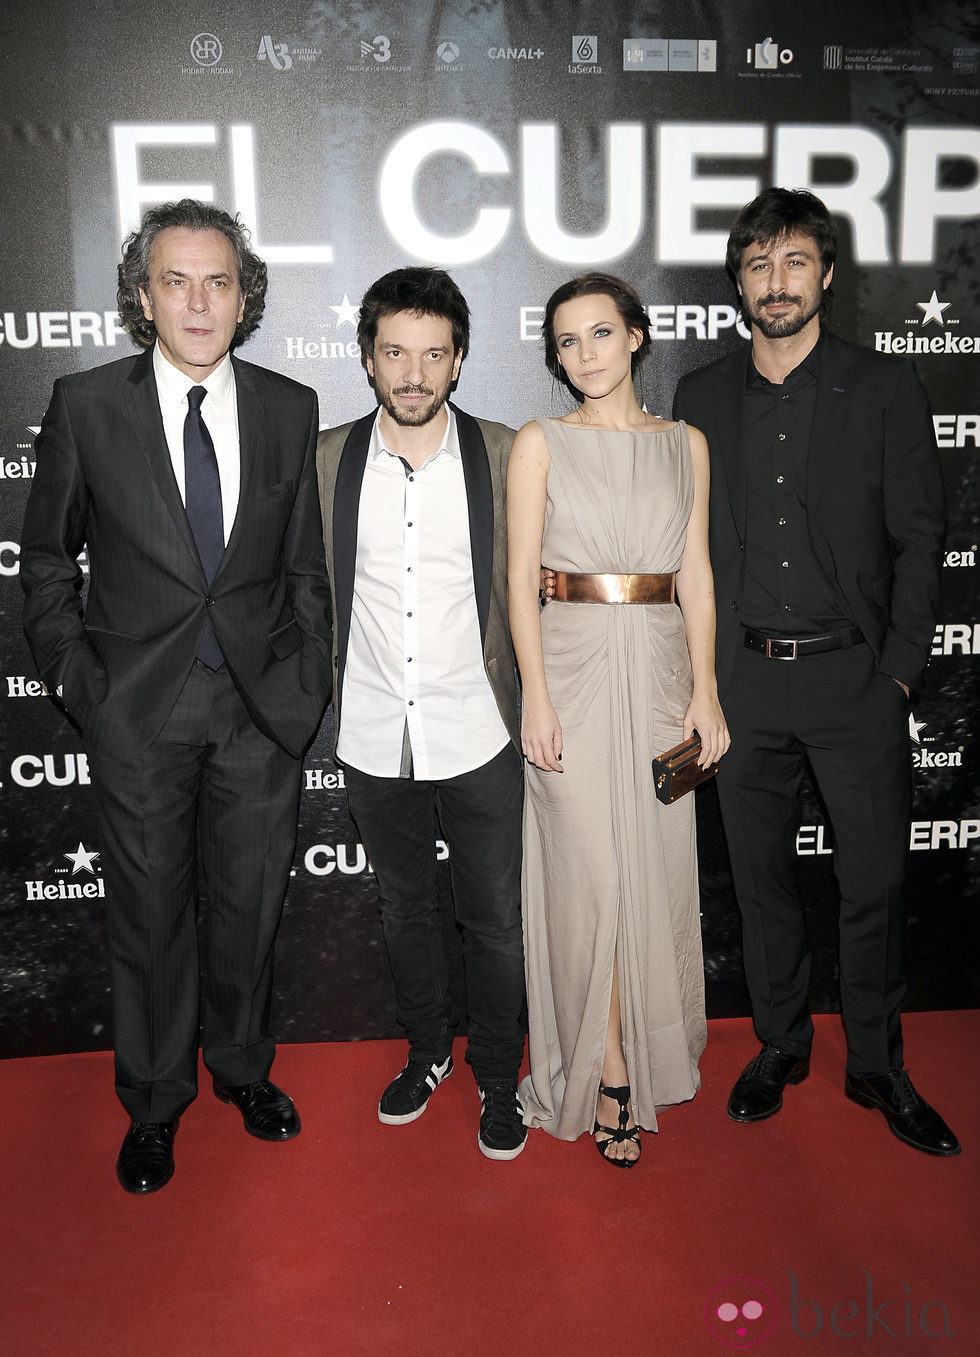 José Coronado, Oriol Paulo, Aura Garrido y Hugo Silva en el estreno de 'El Cuerpo'